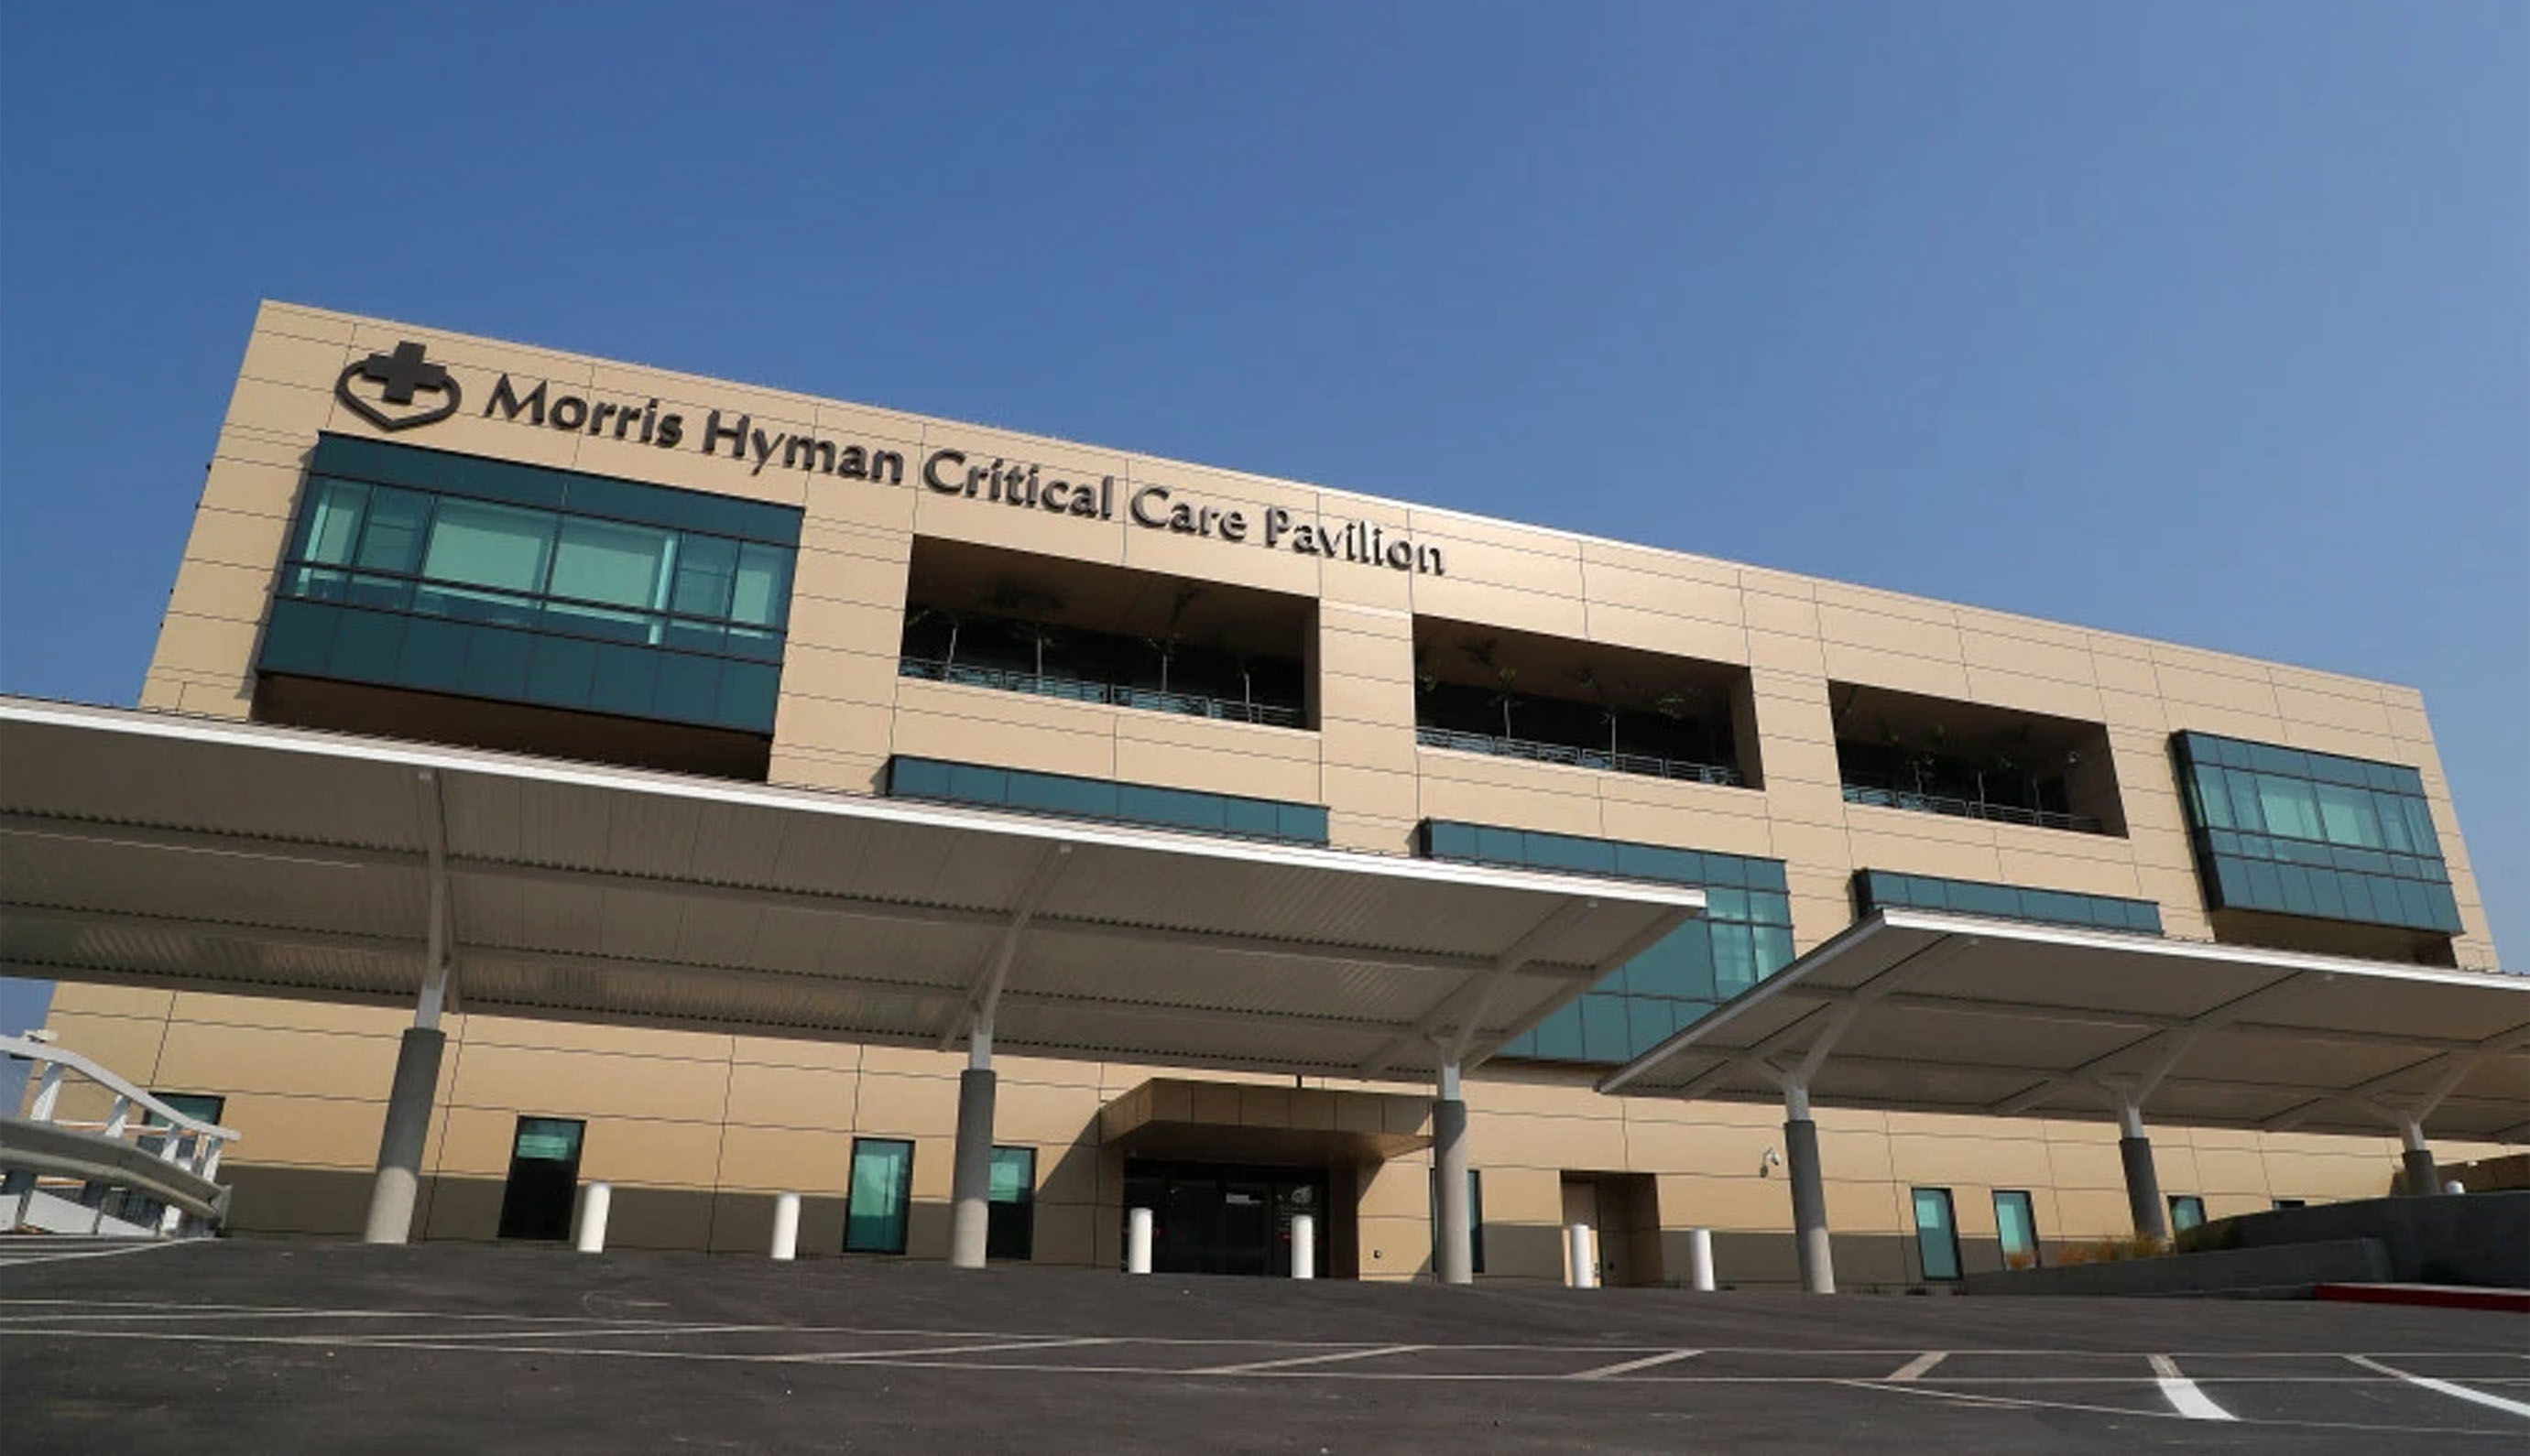 The Morris Hyman Critical Care Pavilion